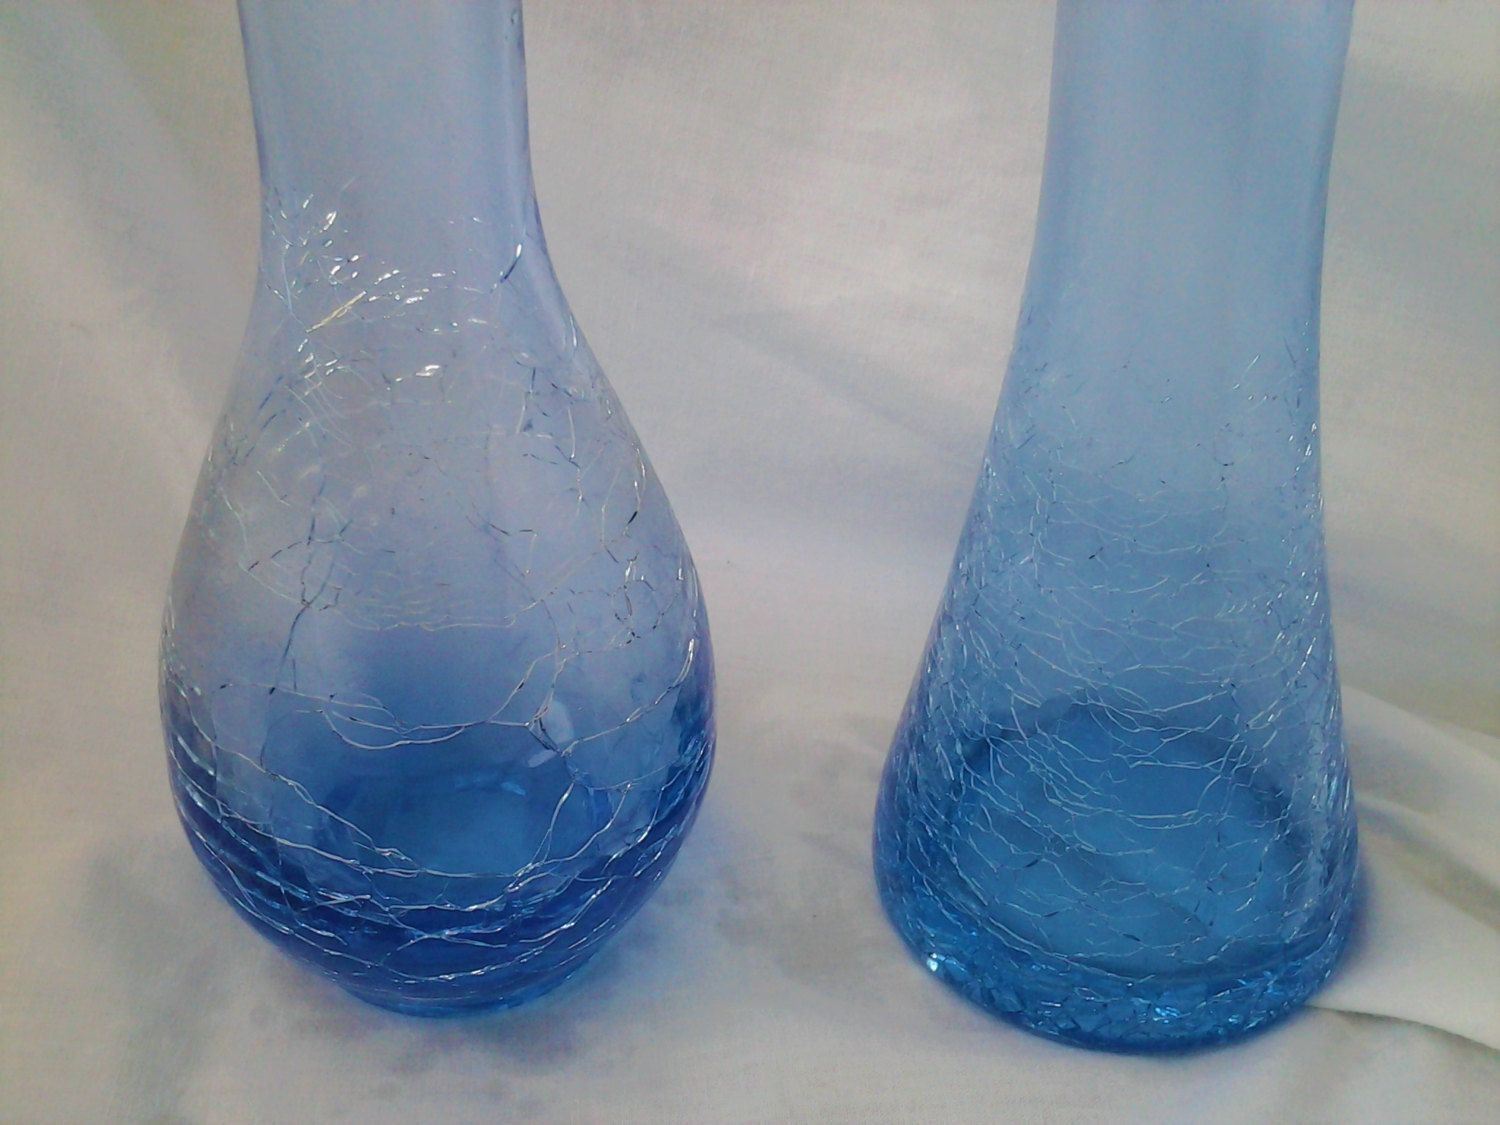 rose quartz vase of vintage crackled blue vase vintage coloured and clear glass vases pertaining to vintage crackled blue vase